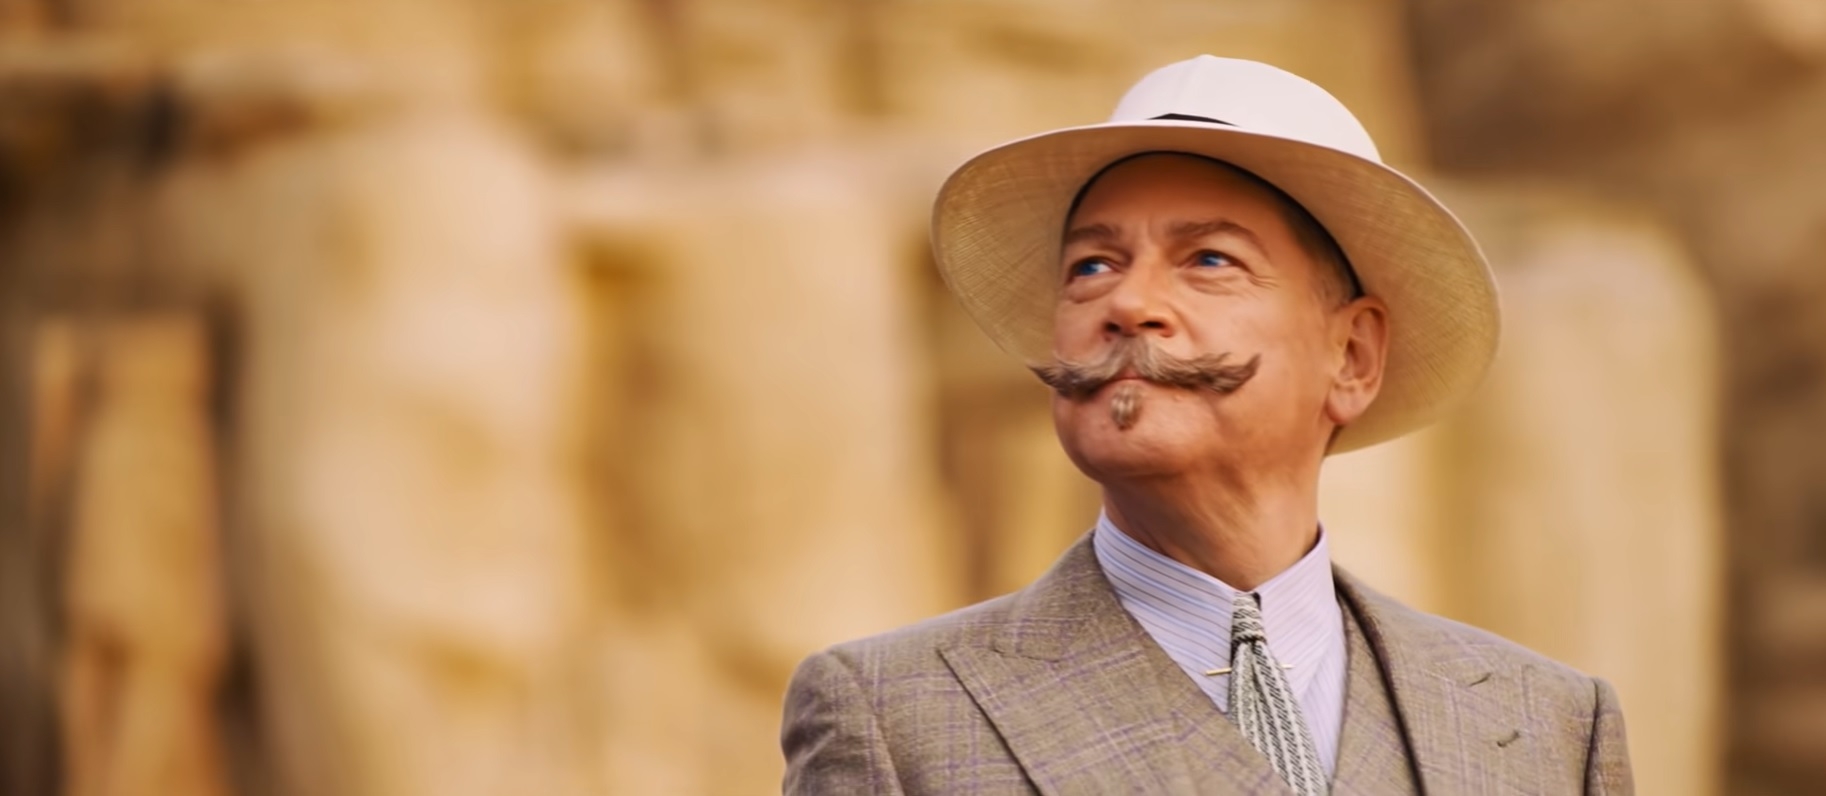 Ao longo do filme, Poirot entrevista os passageiros e coleta evidências, revelando os relacionamentos entrelaçados, ciúmes e ressentimentos que podem ter levado ao assassinato da socialite.